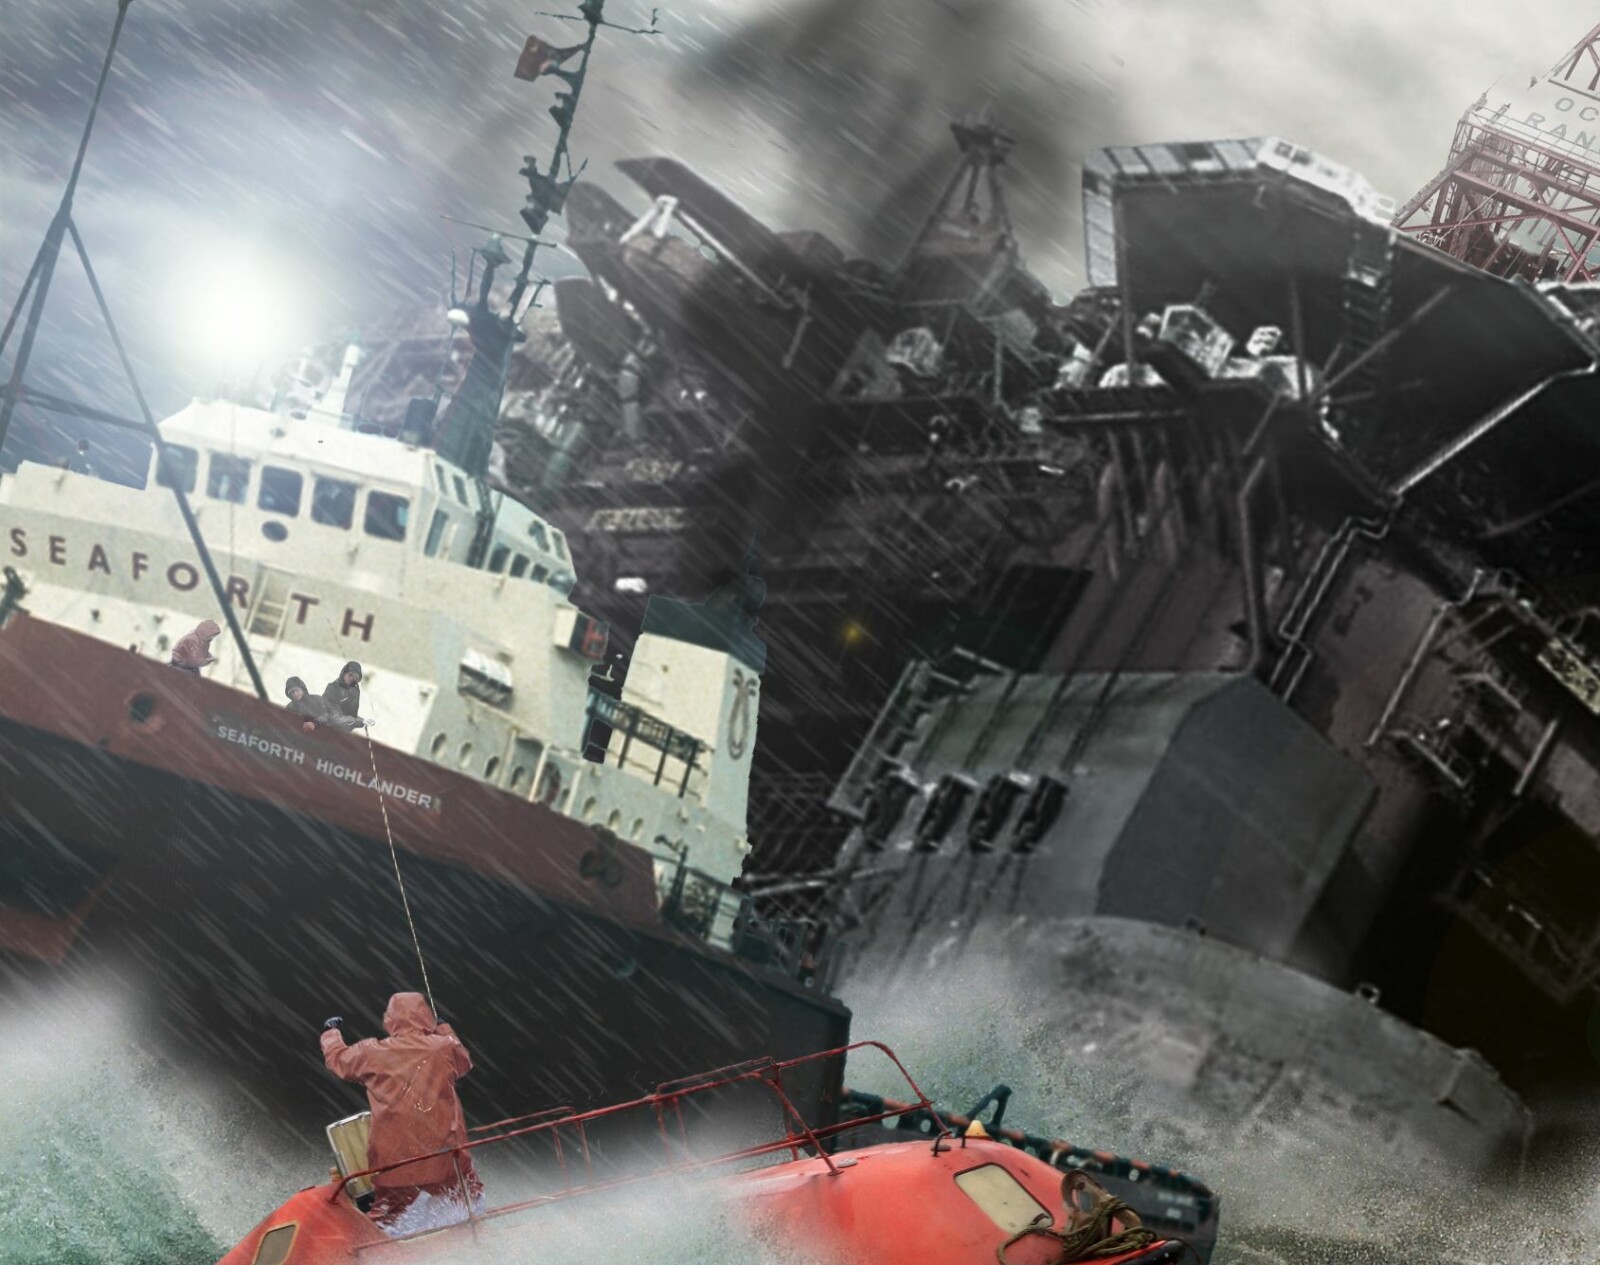 <b>KJEMPET:</b> Mannskapet på supplyskipet Seaforth Higlander forsøker å redde mannskap fra livbåten de satt i.